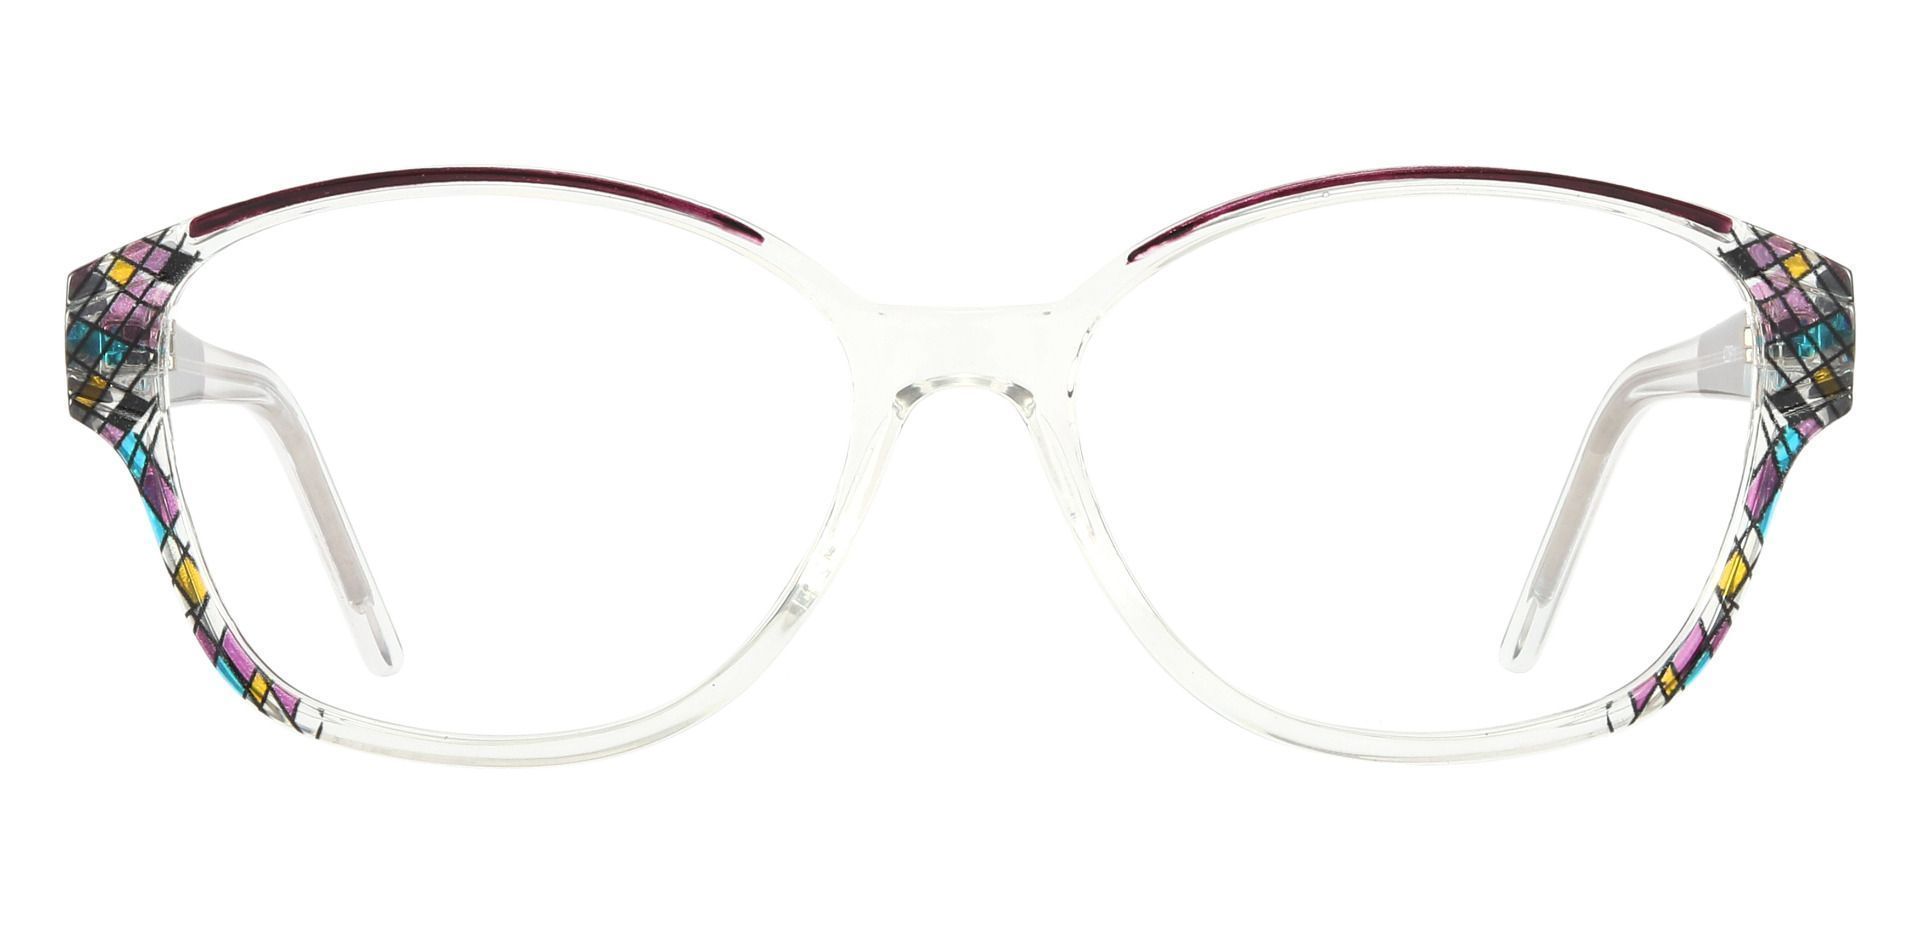 Moira Oval Prescription Glasses - Purple